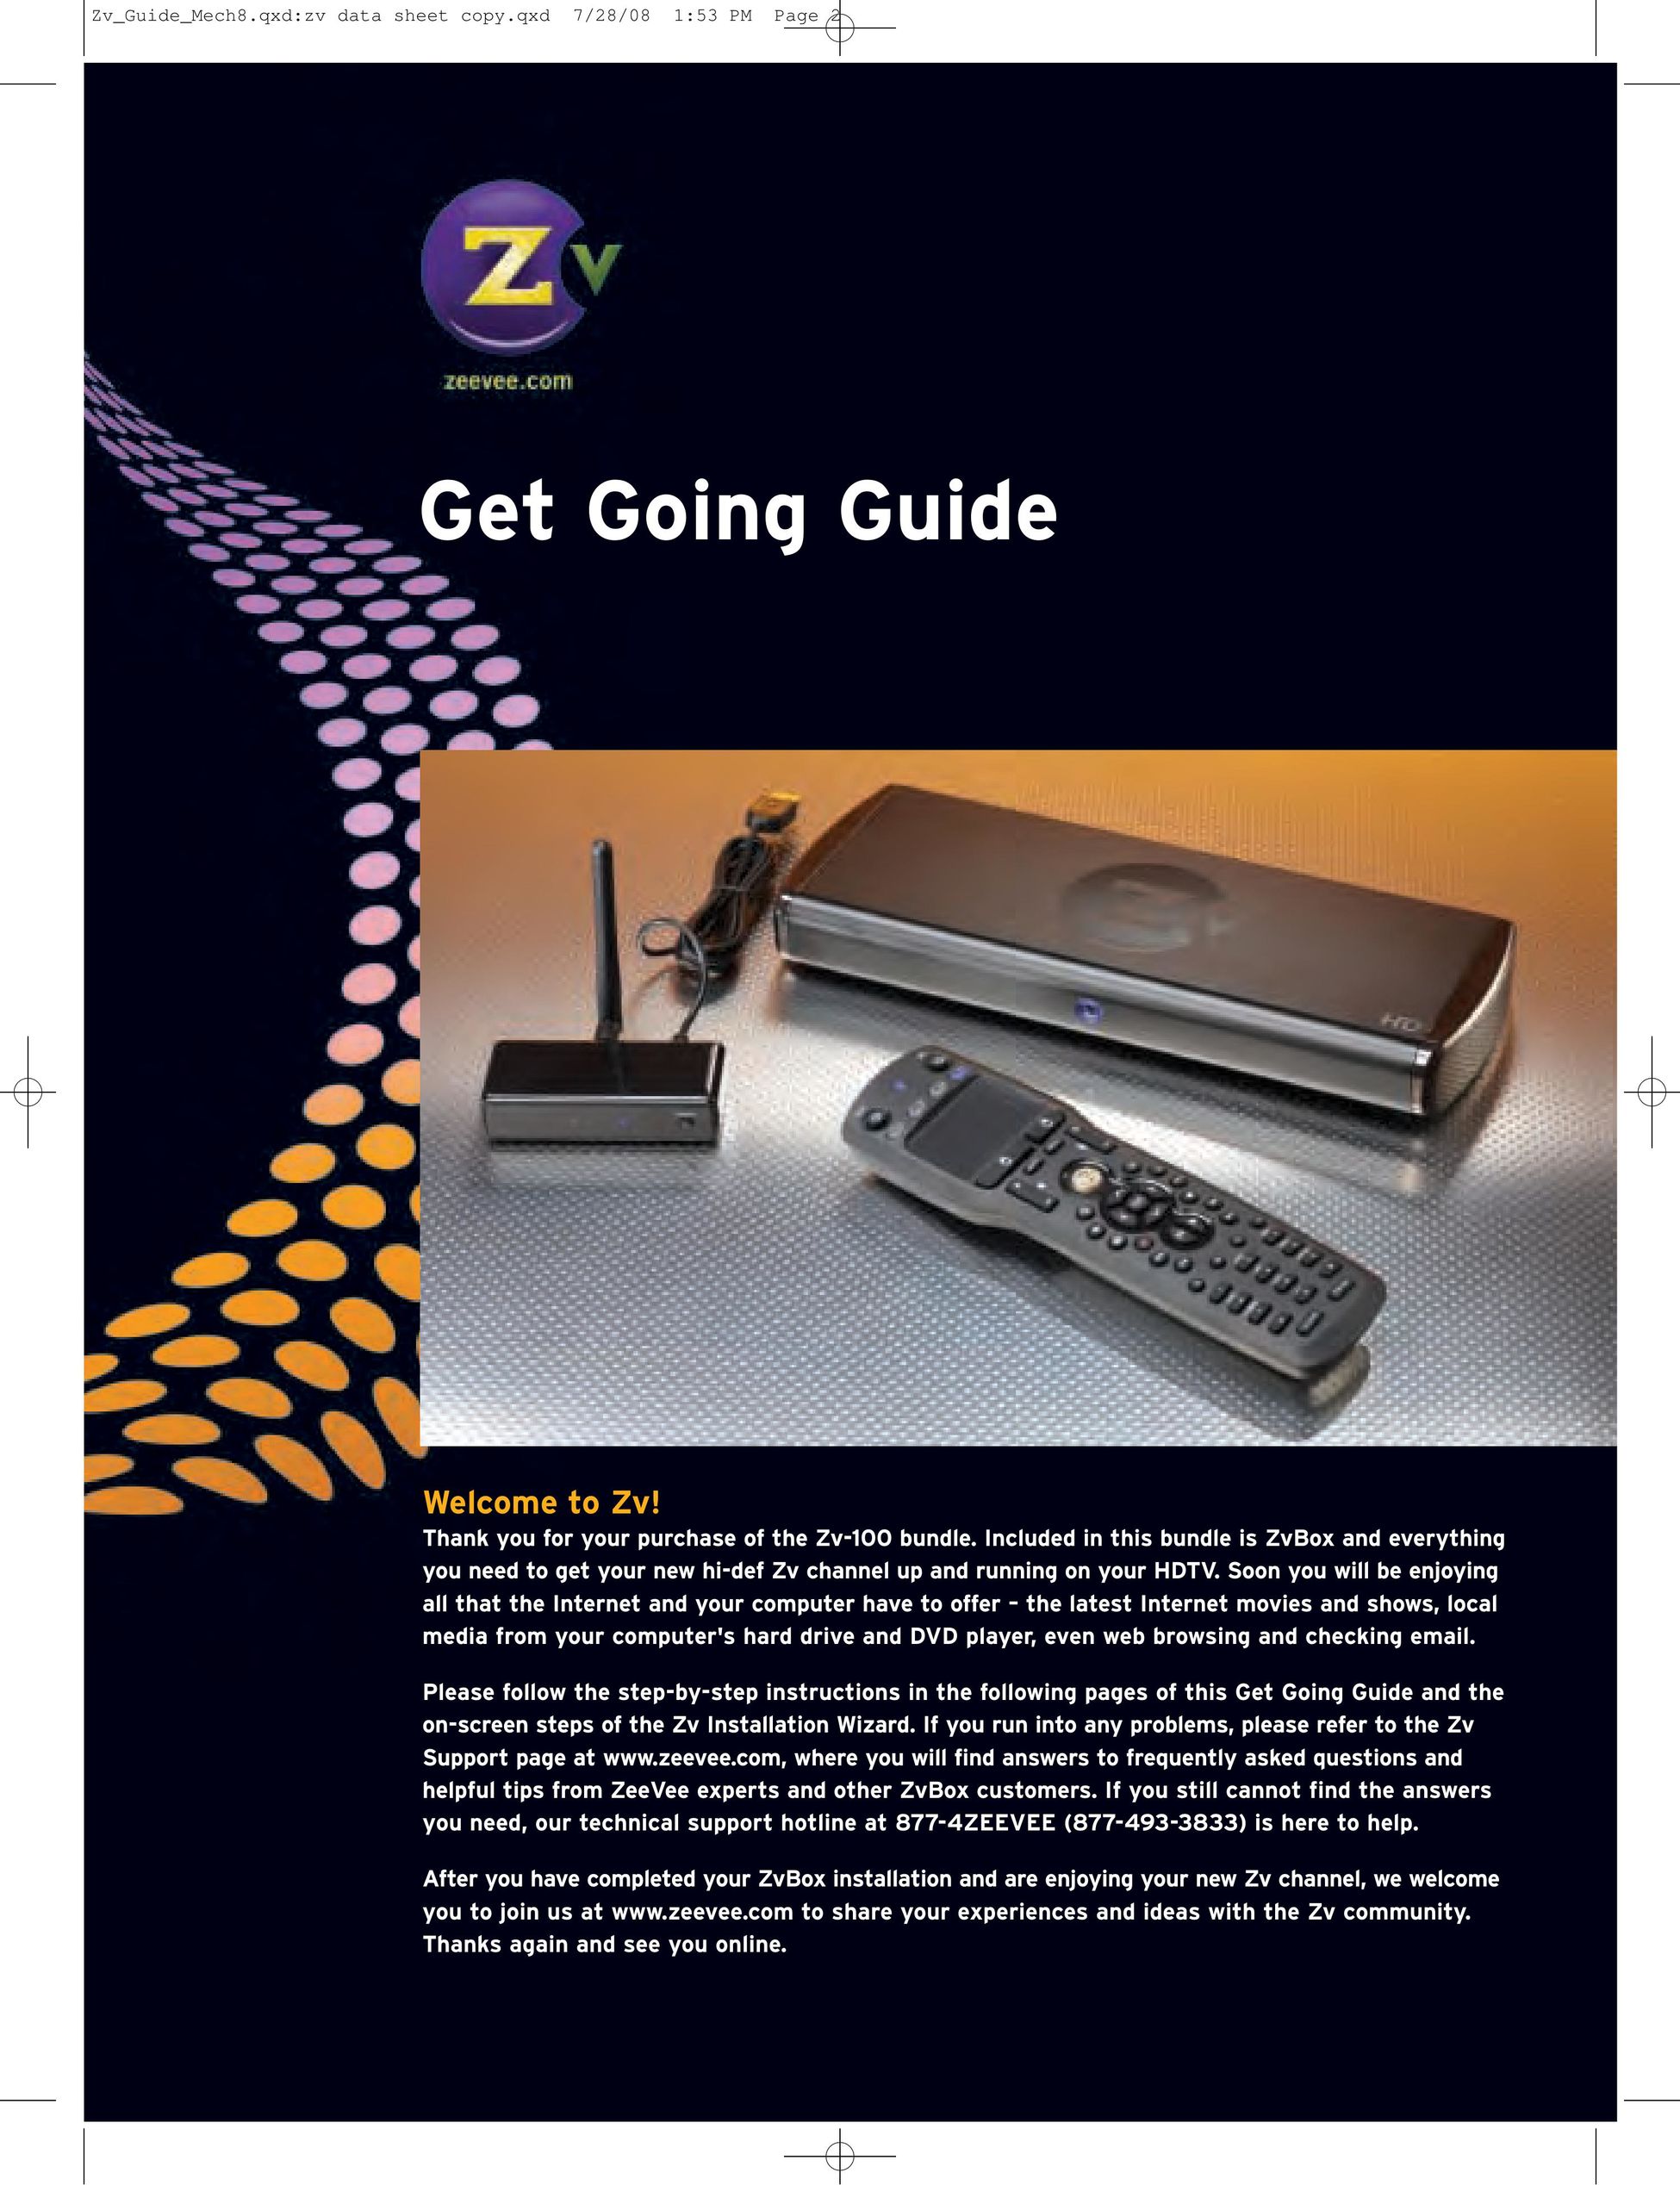 ZeeVee Zv-100 TV Receiver User Manual